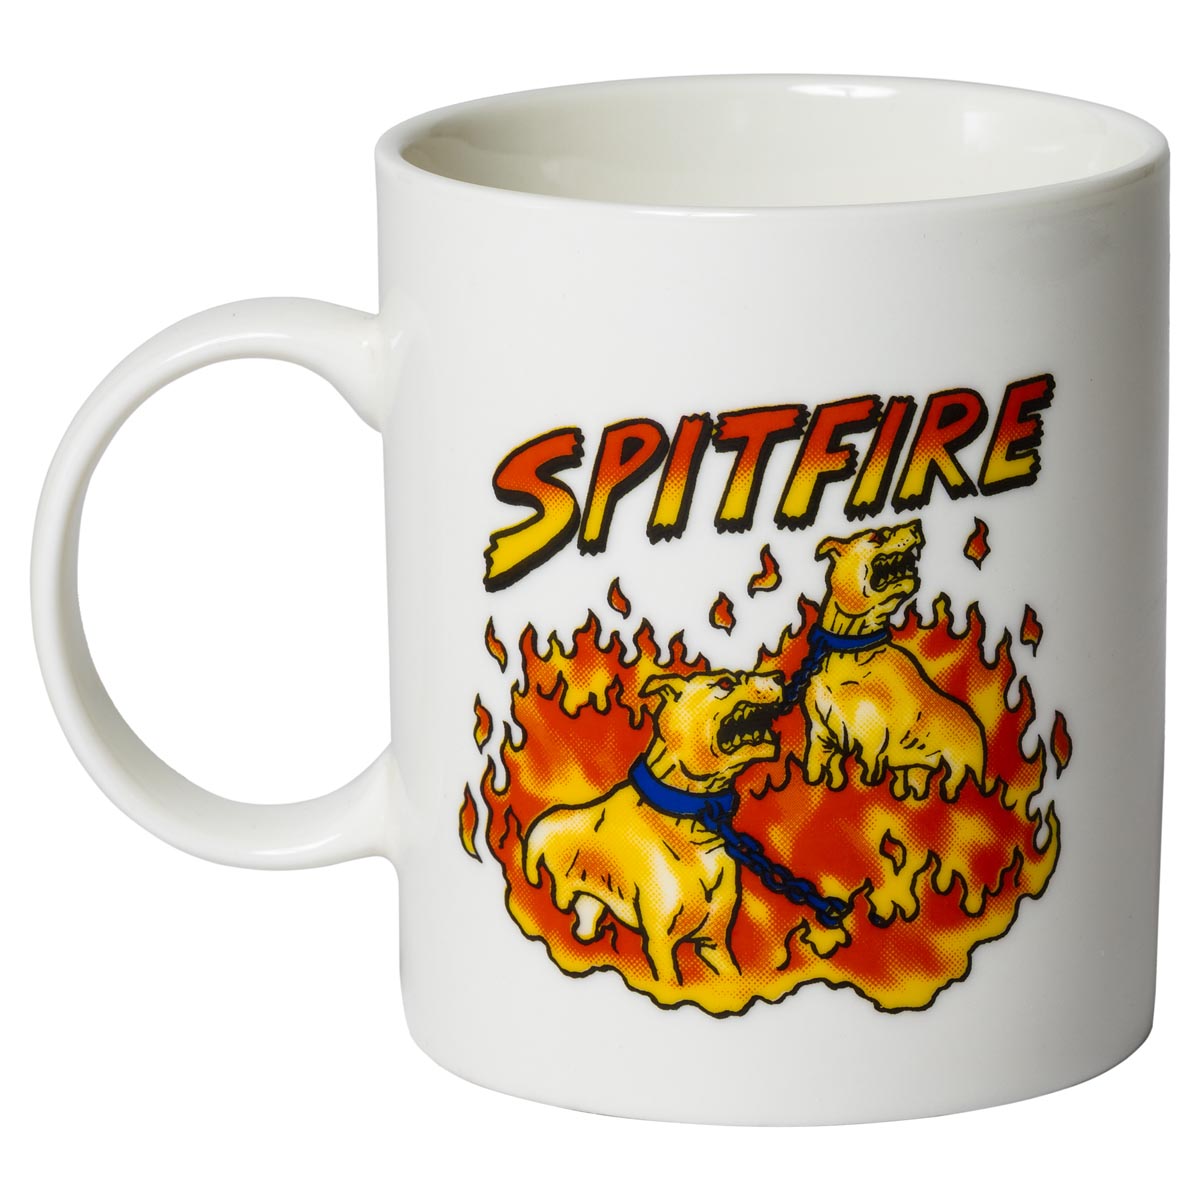 Spitfire Hell Hounds Mug - White image 1